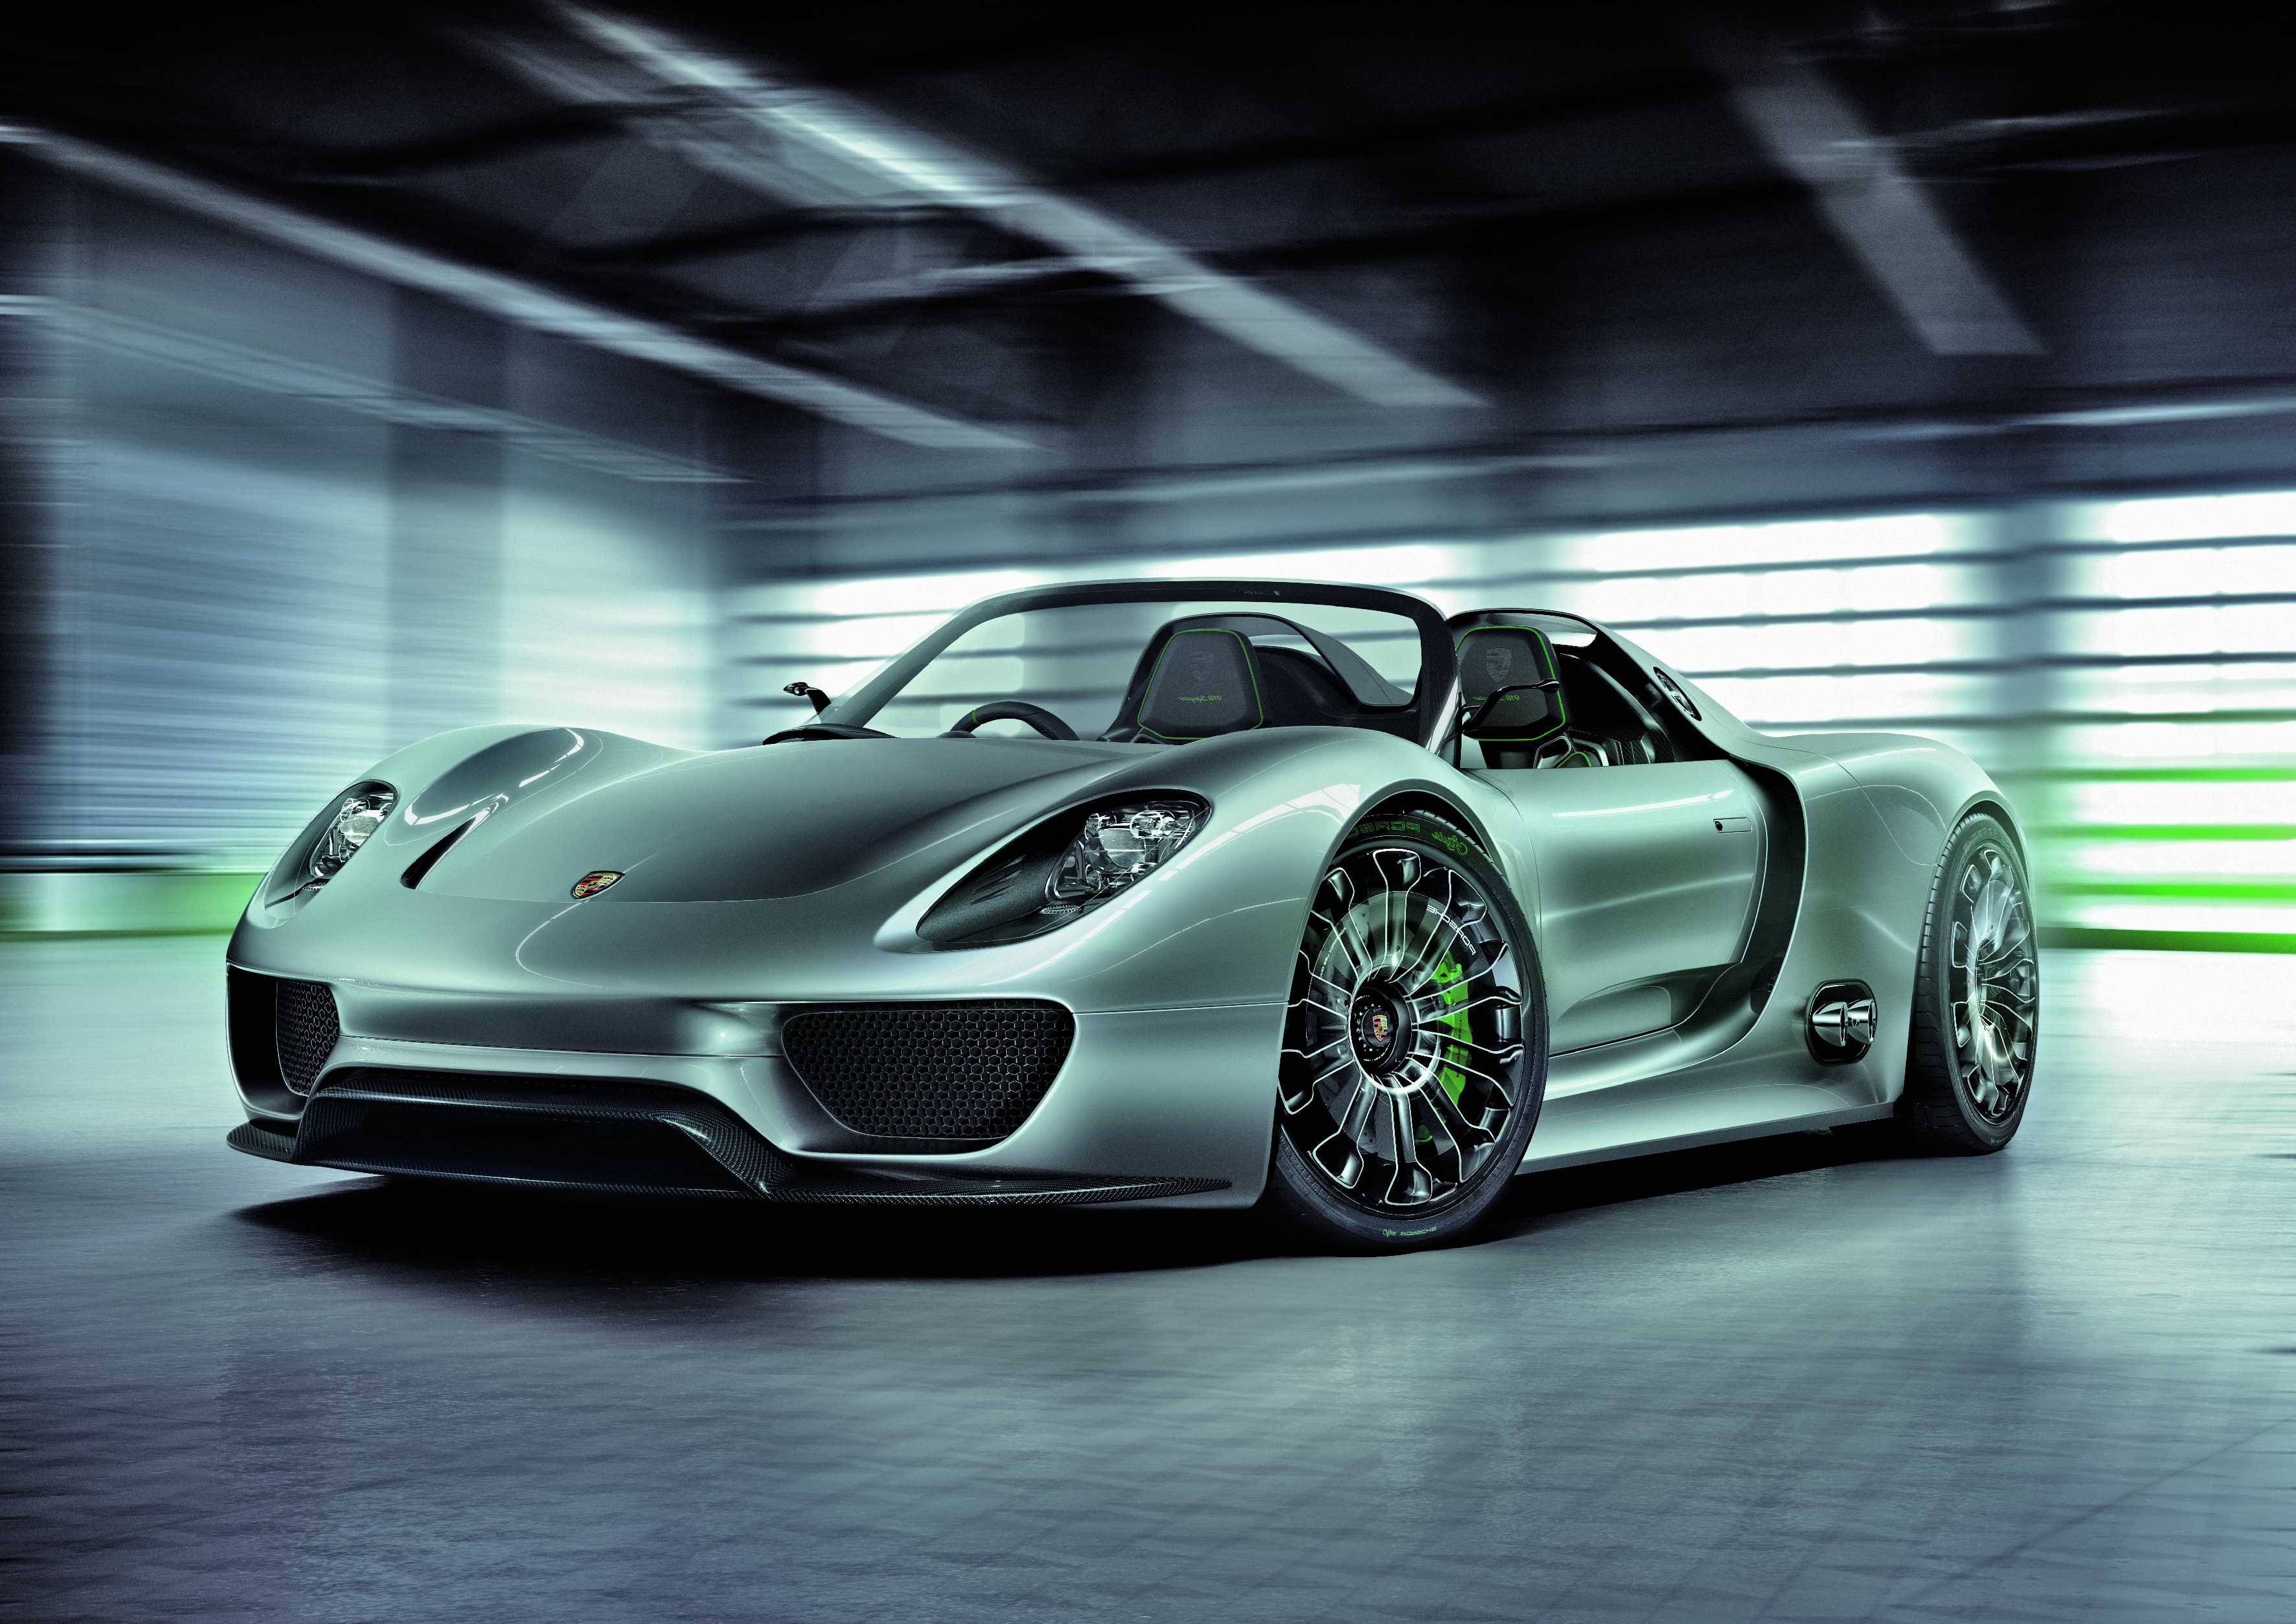 Download mobile wallpaper Porsche, Car, Supercar, Vehicles, Silver Car, Porsche 918 Spyder for free.